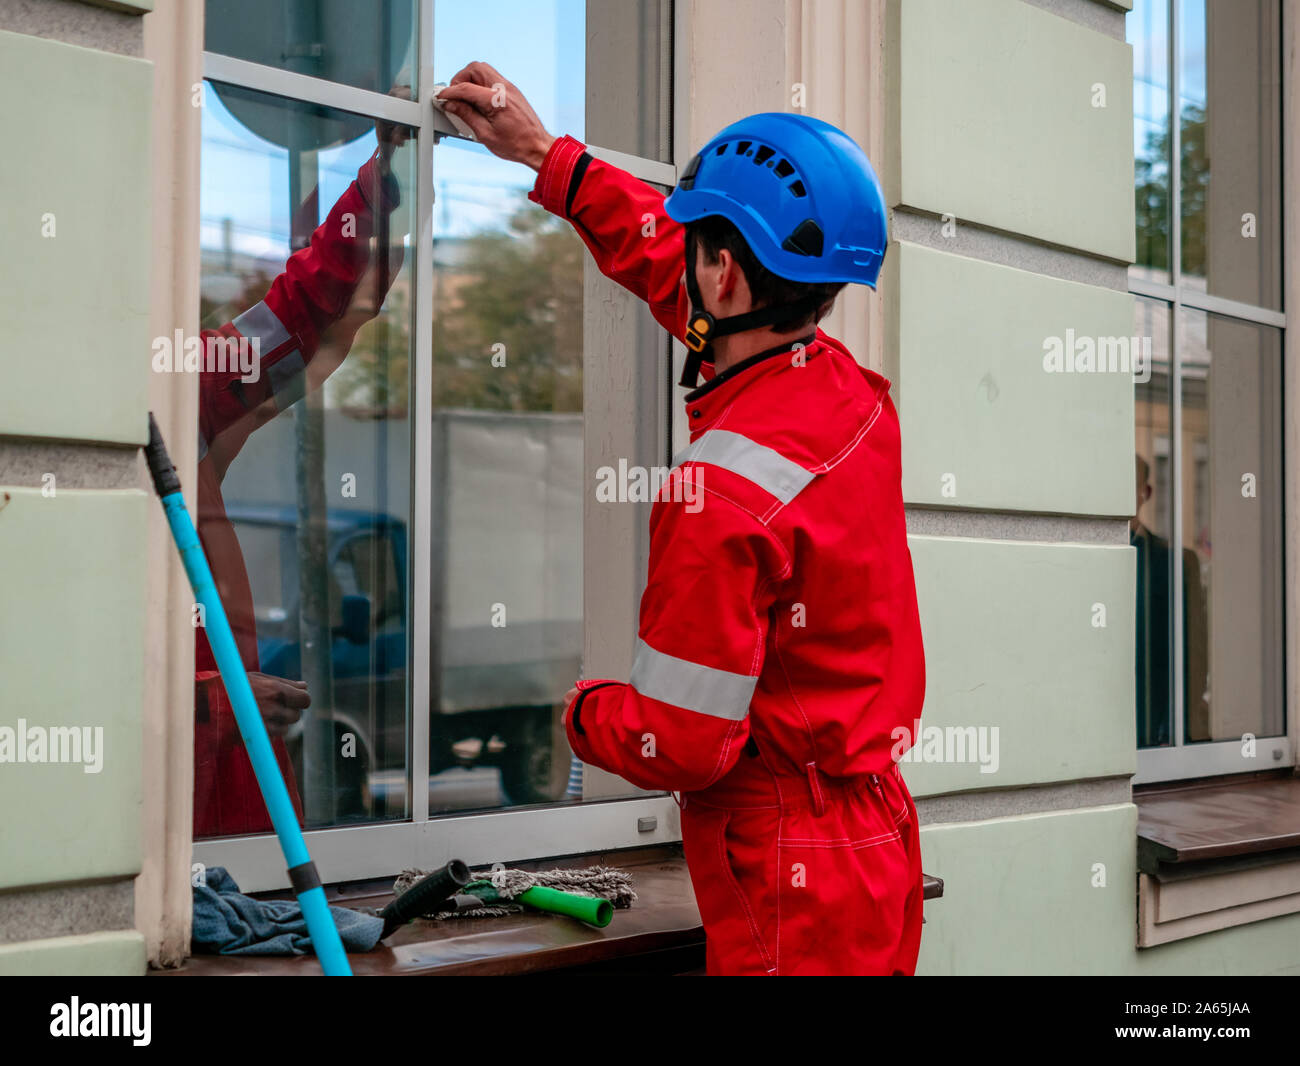 Reiniger mit Mop und Zubehör bereitet Windows in historischer Architektur Gebäude zu waschen. Arbeiter in der Eingebrannten roten Overall, Helm und spezielle equ Stockfoto